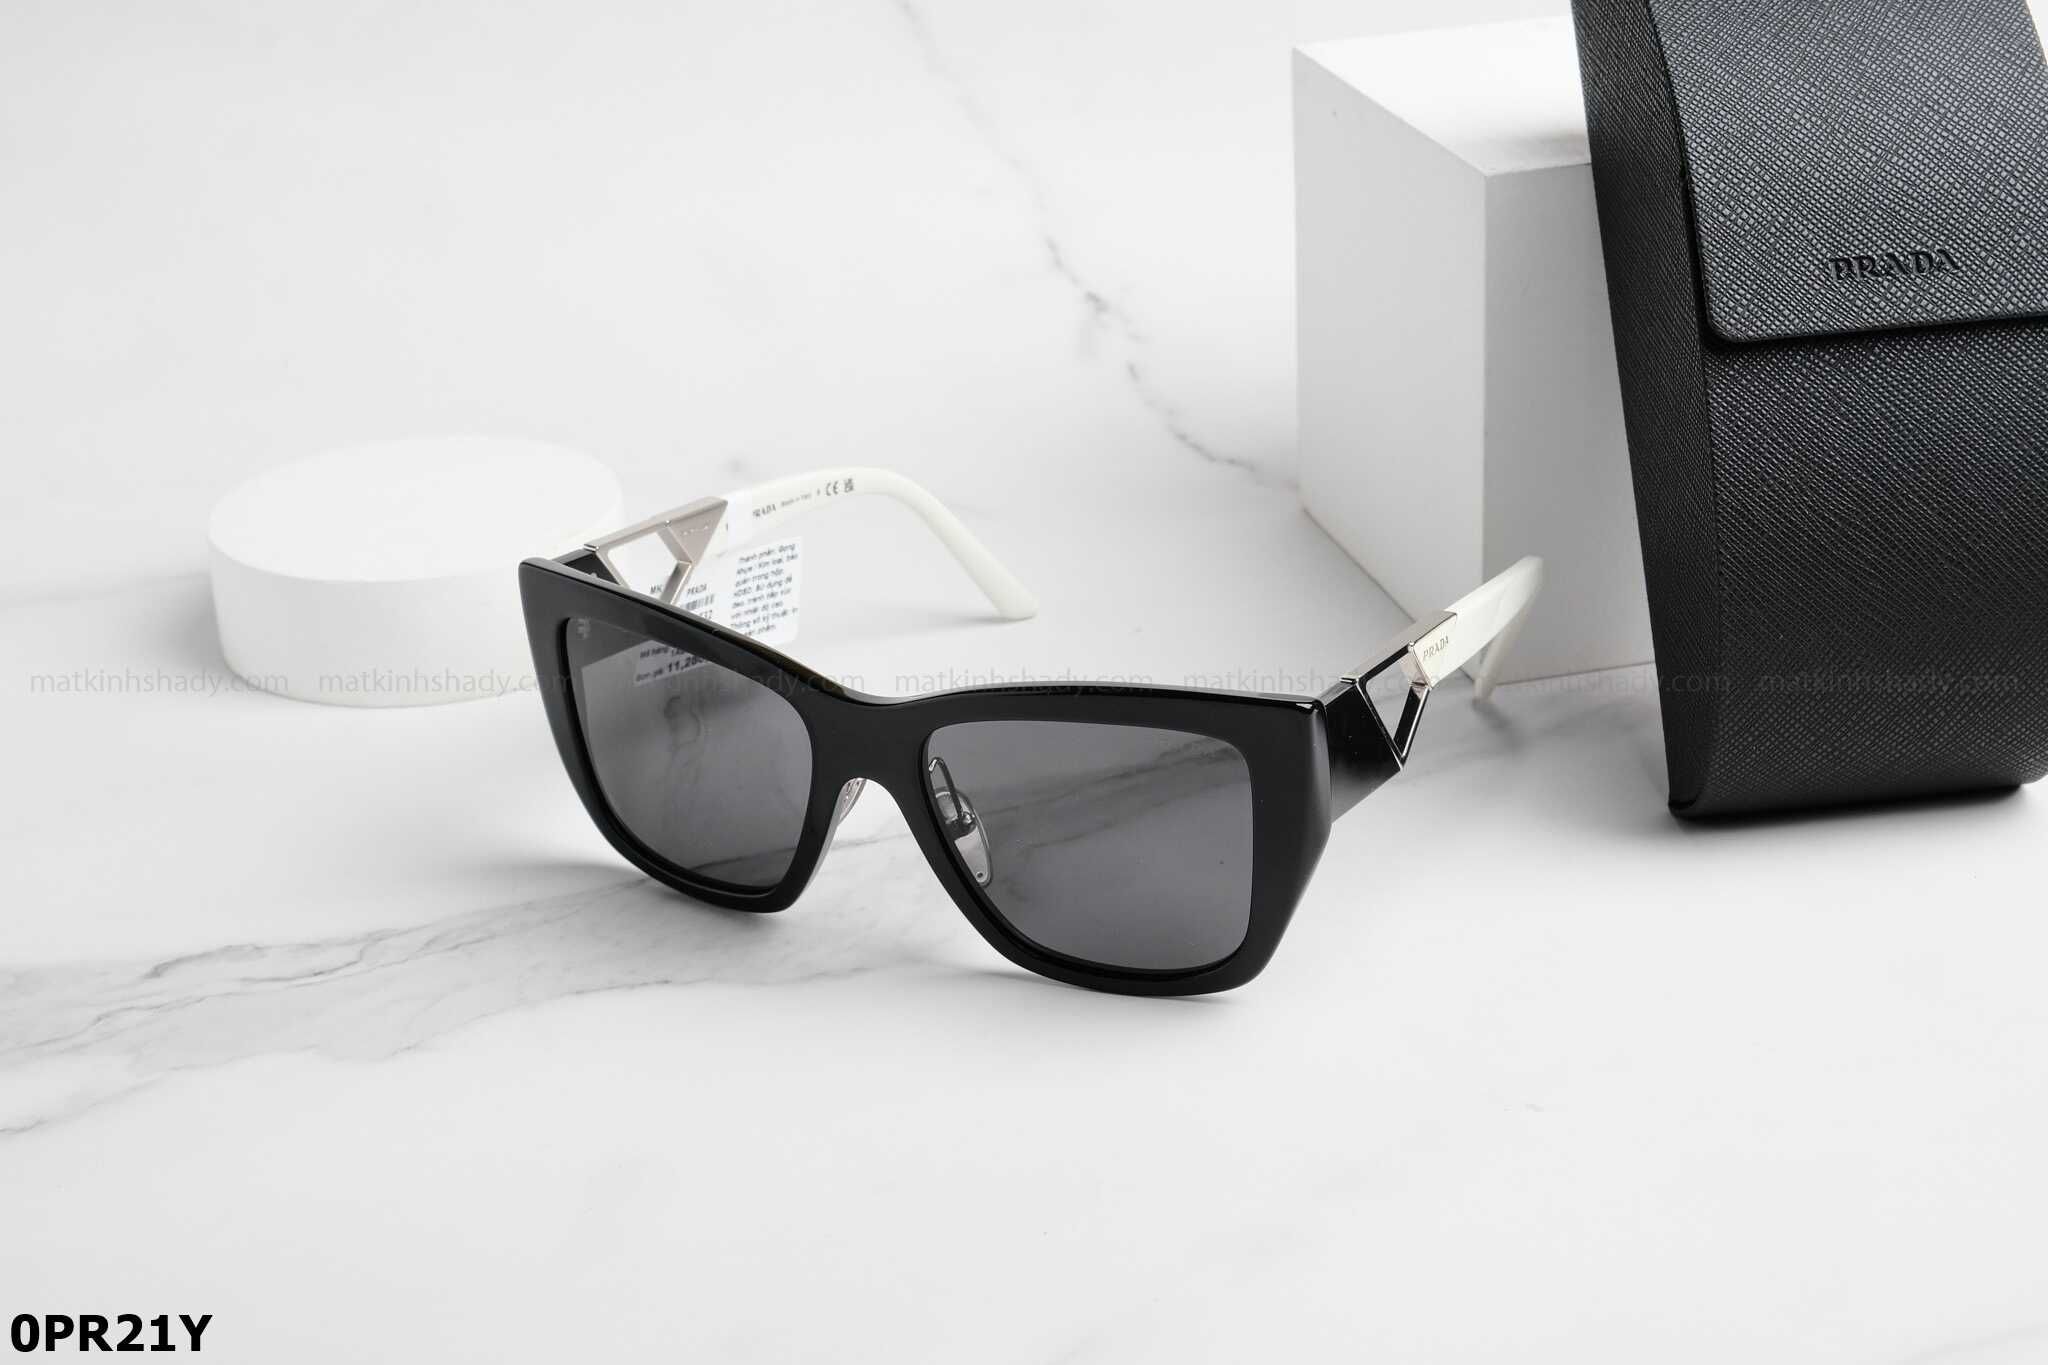  Prada - Eyewear - Sunglasses - OPR21Y 